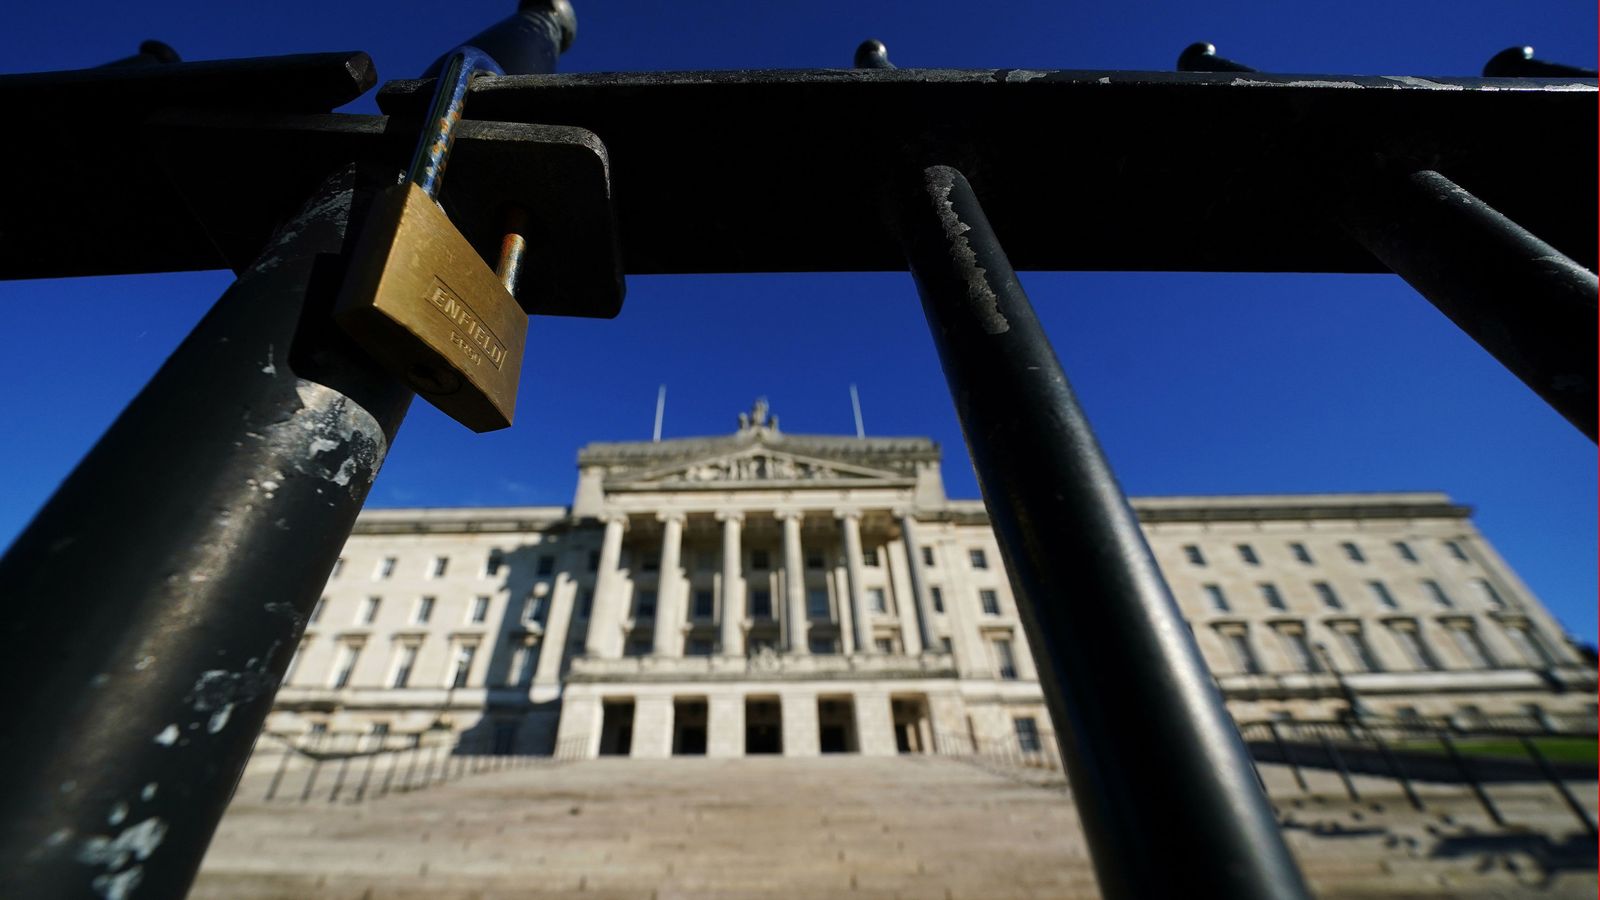 Секретарят на Северна Ирландия се зарича да възприеме „прагматичен“ законодателен подход, тъй като крайният срок за възстановяване на Стормонт преминава